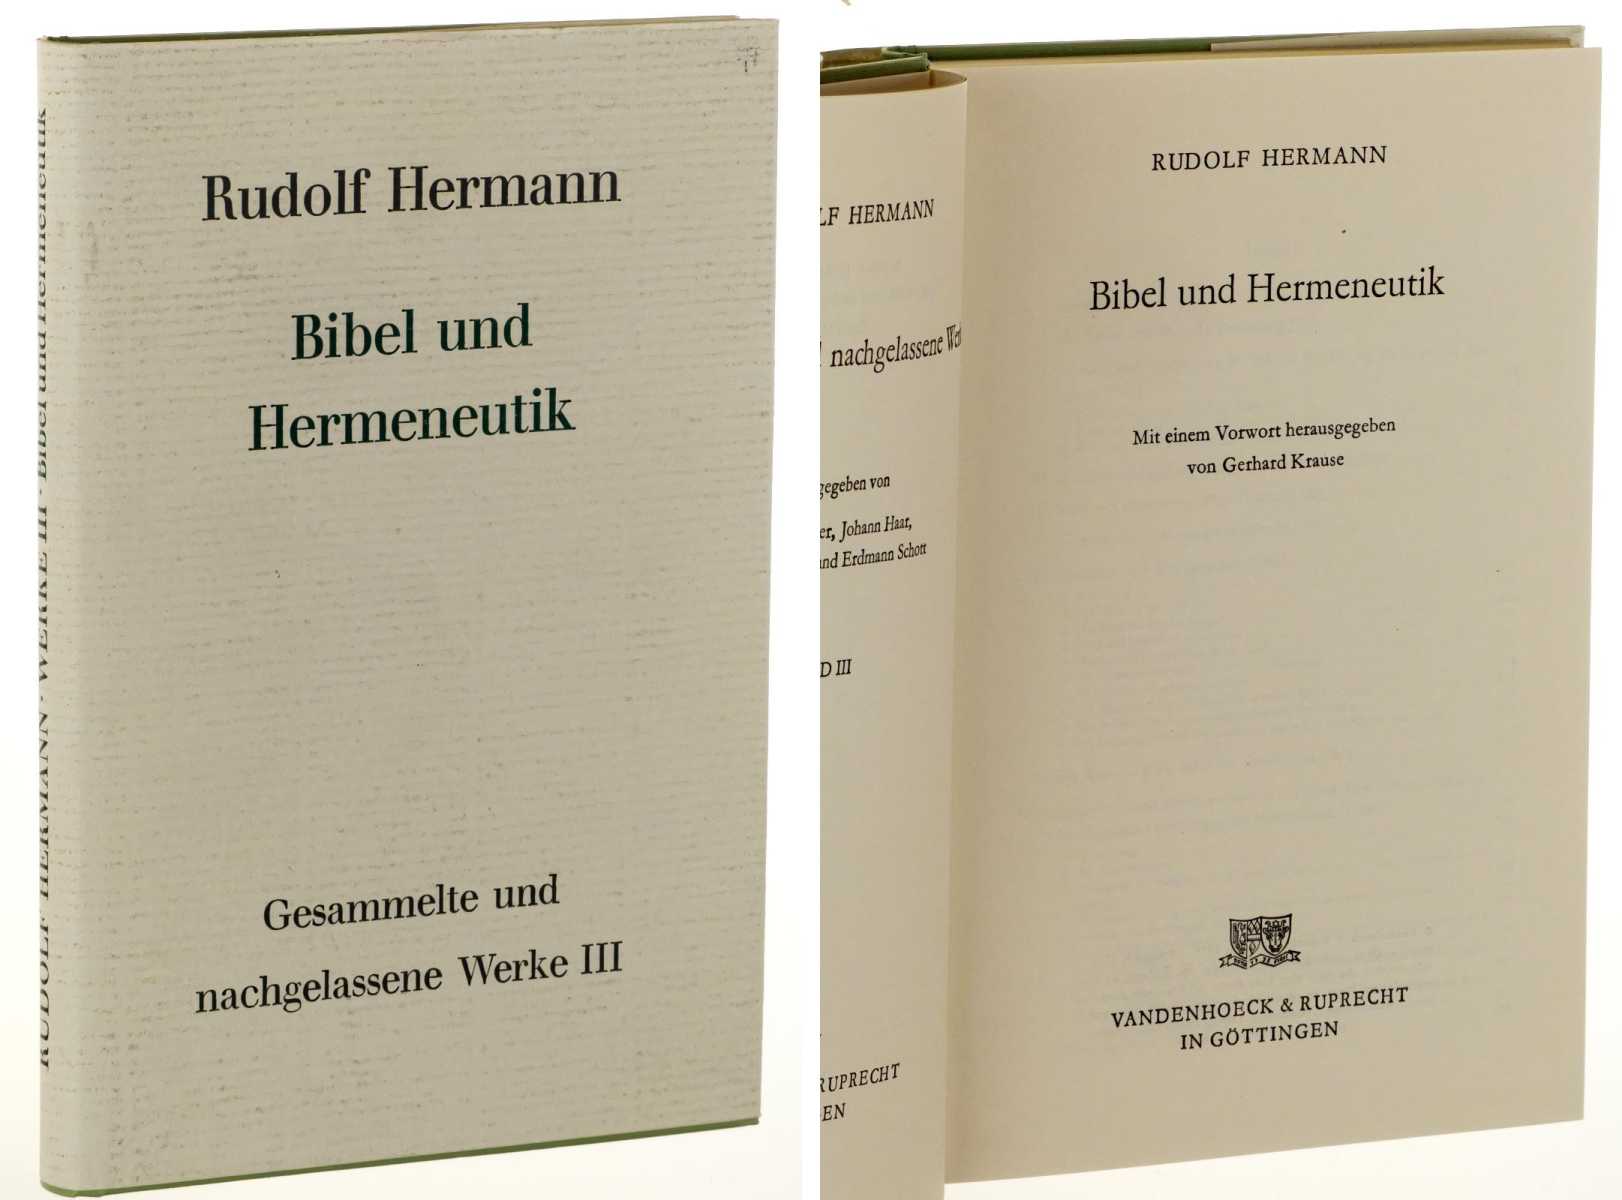 Hermann, Rudolf:  Bibel und Hermeneutik. (Ges. u. nachgel. Werke; 3). Mit e. Vorw. von Gerhard Krause 